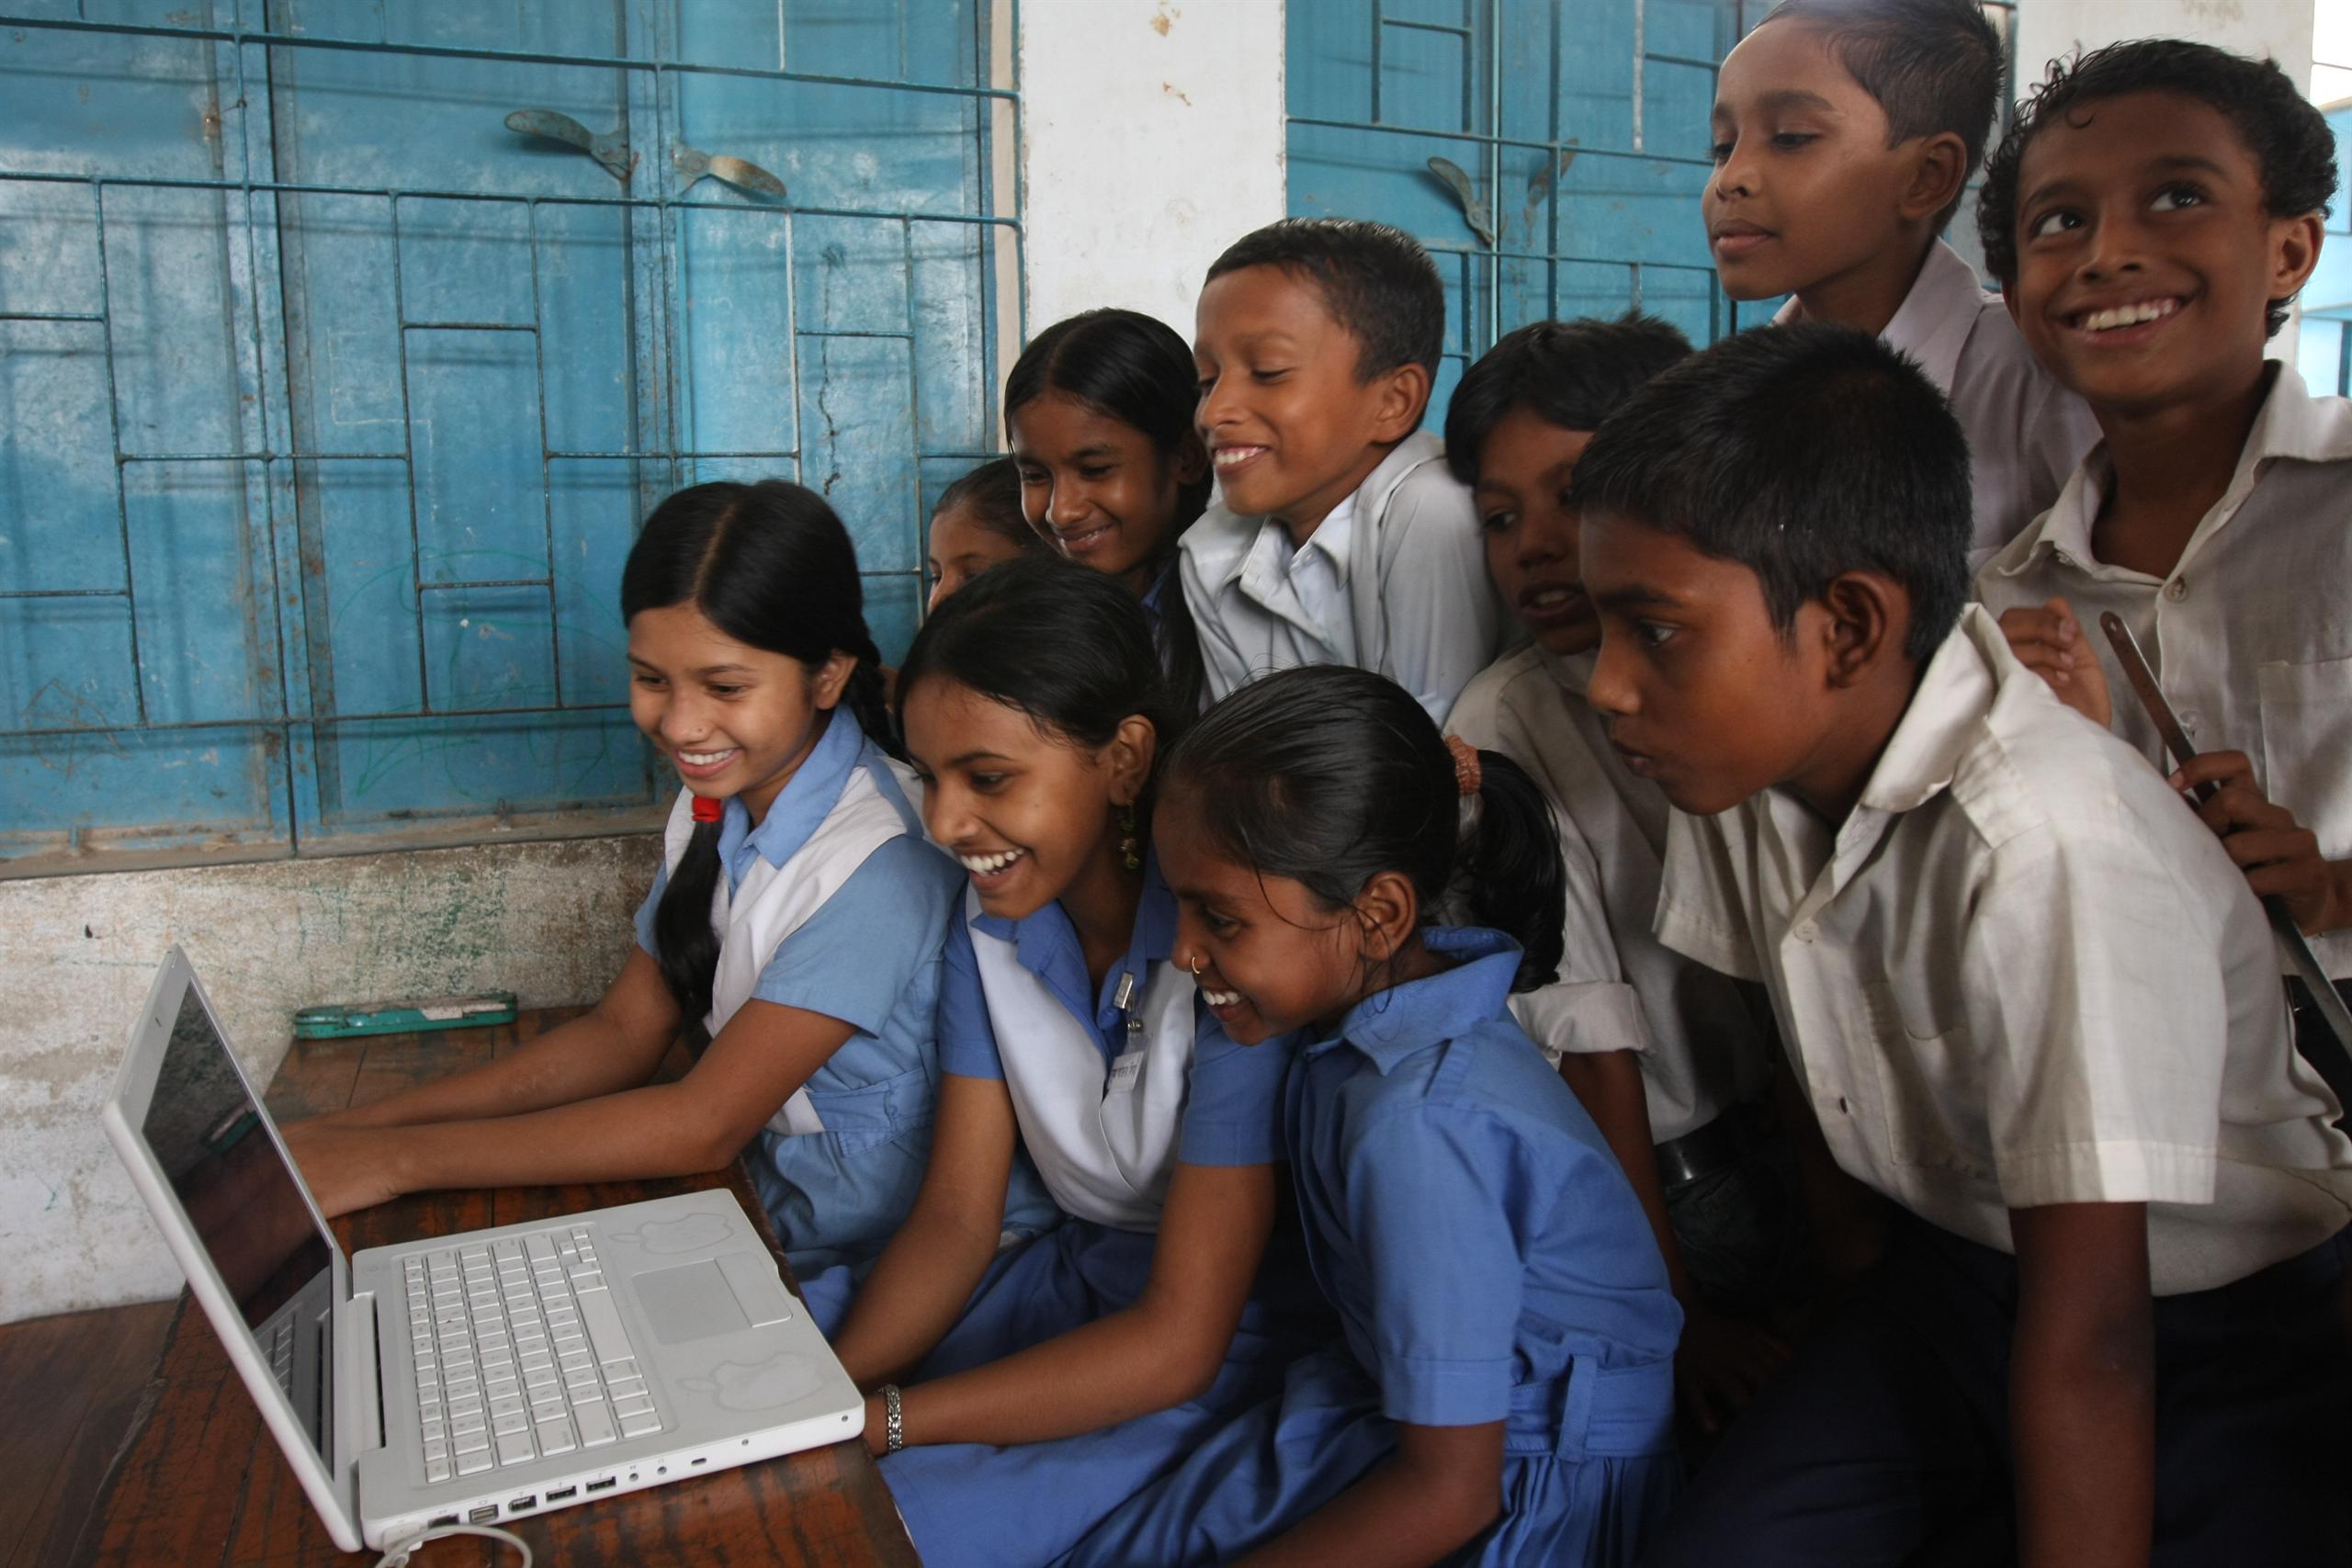 School children gather around a computer